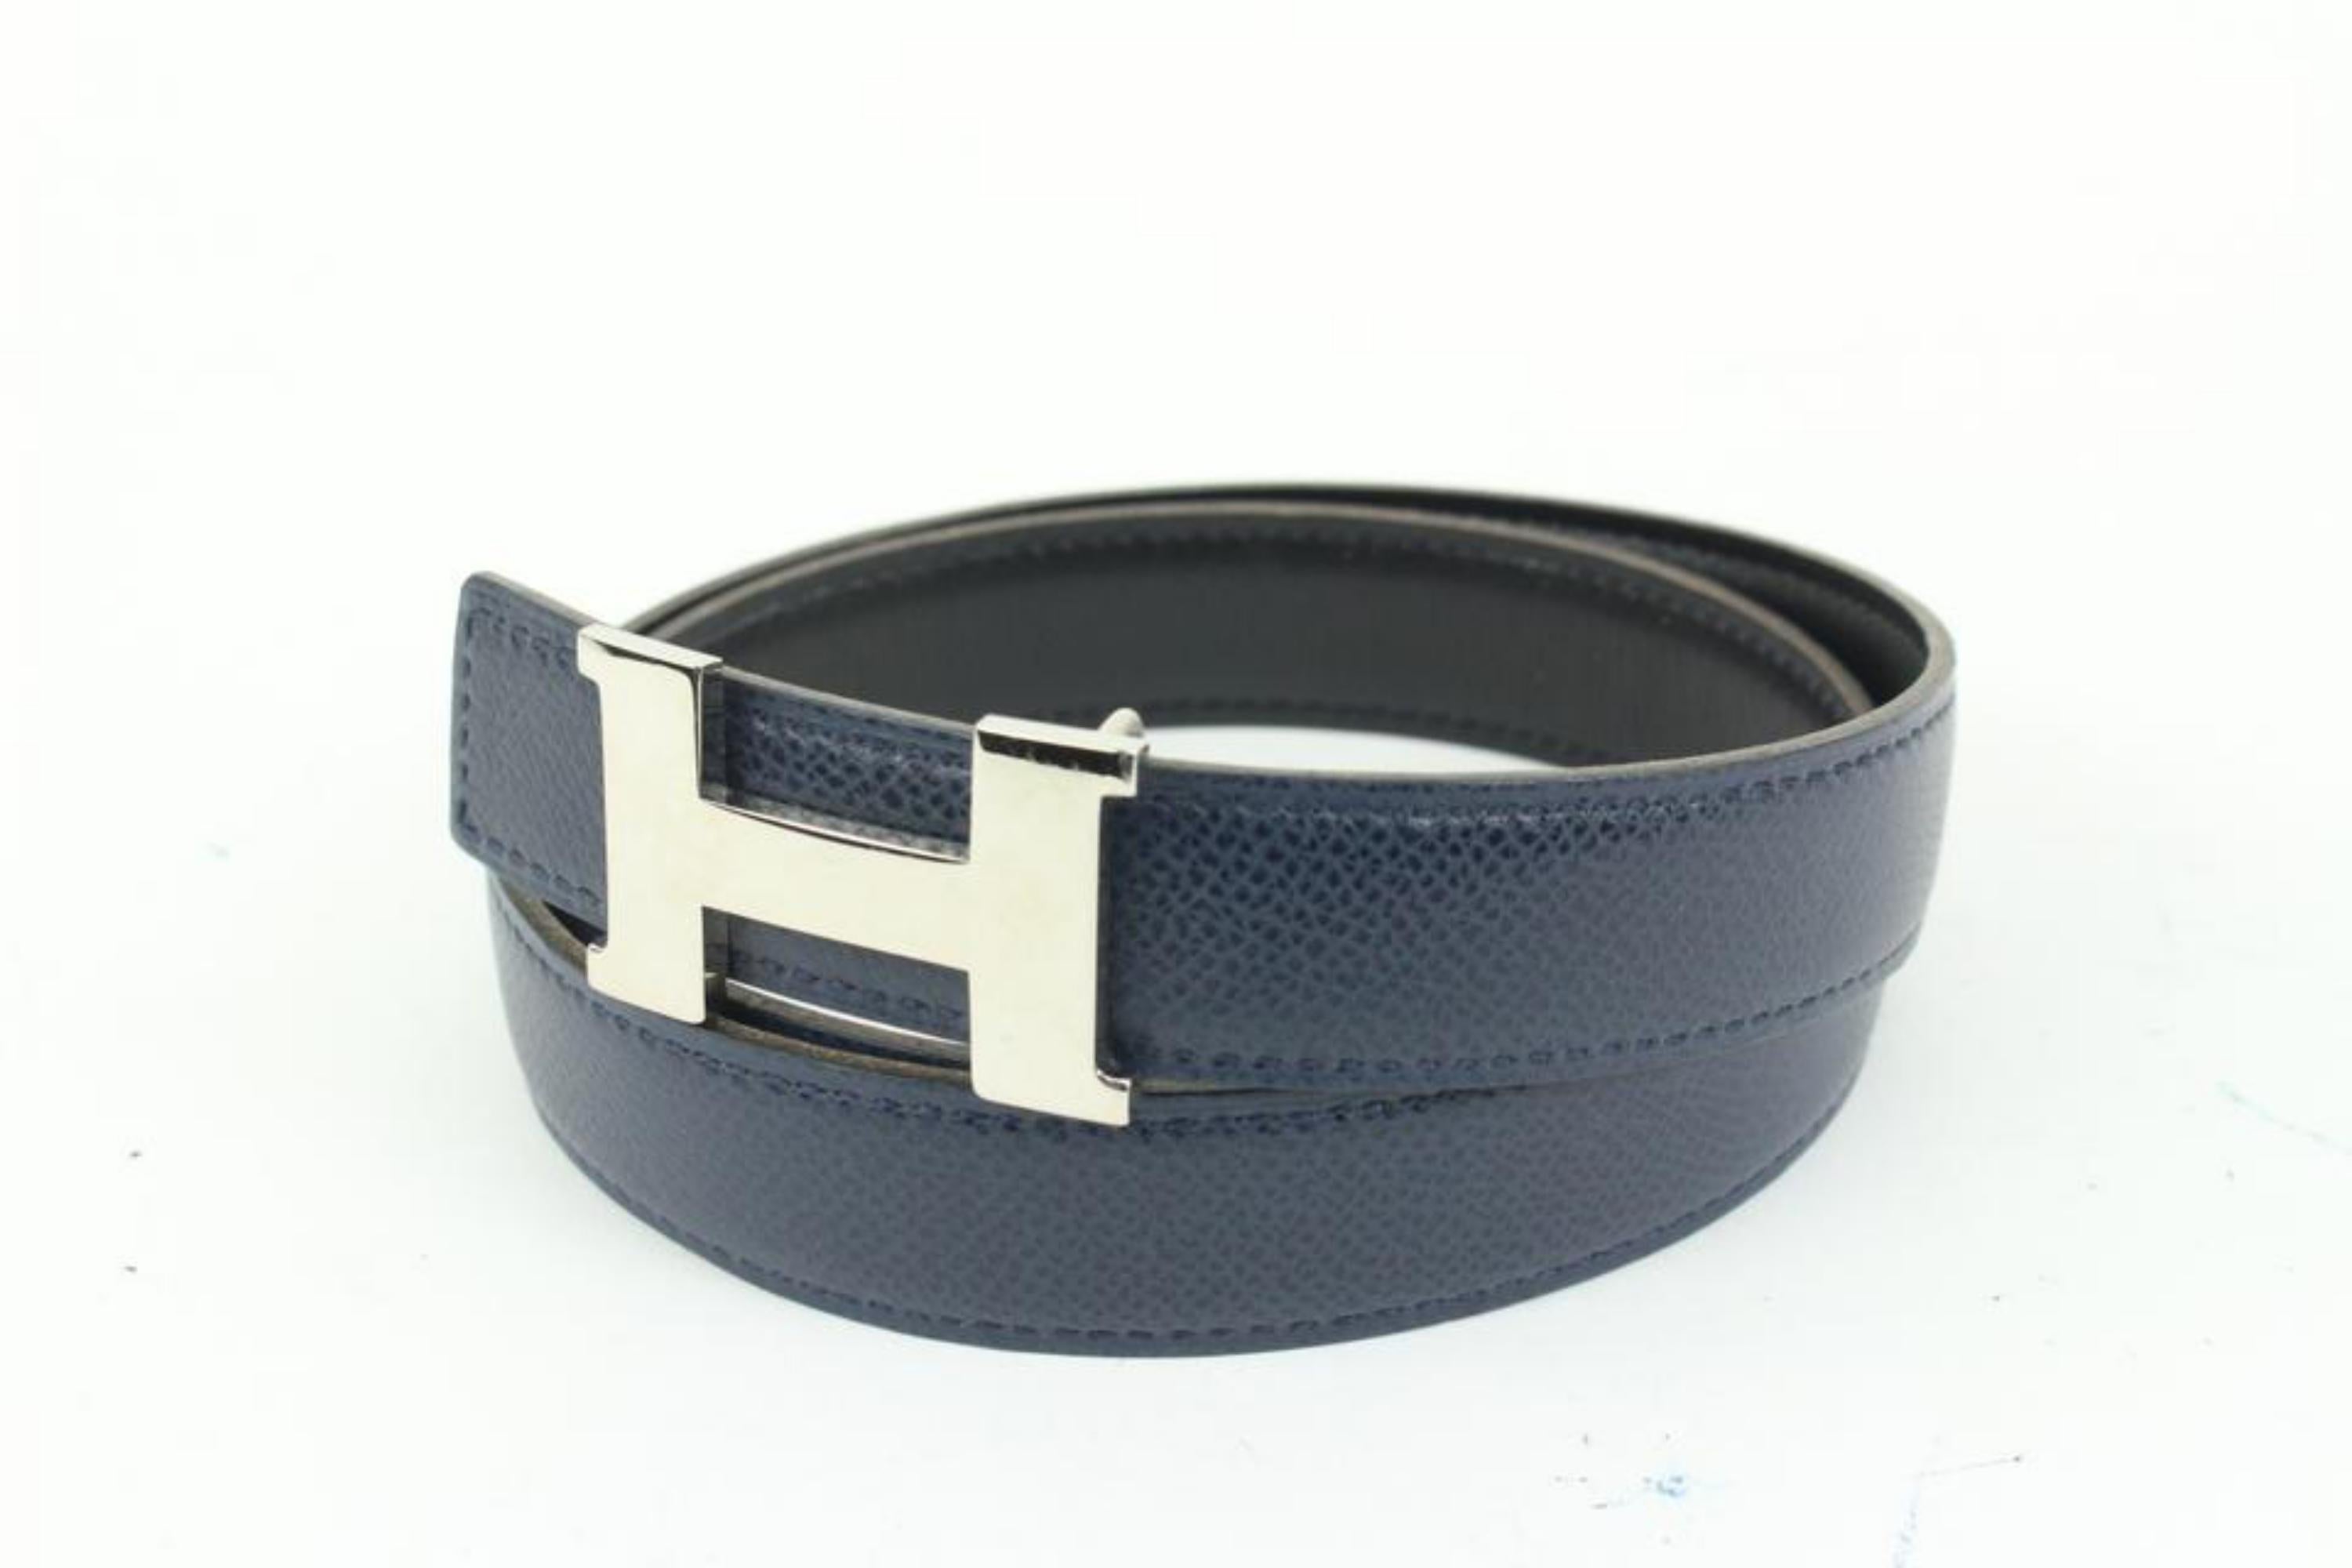 Kit ceinture Hermès Navy x Black x Silver 24mm réversible avec logo H  1h425s
Code de date/Numéro de série : F dans un carré
Fabriqué en : France
Mesures : Longueur :  33.5